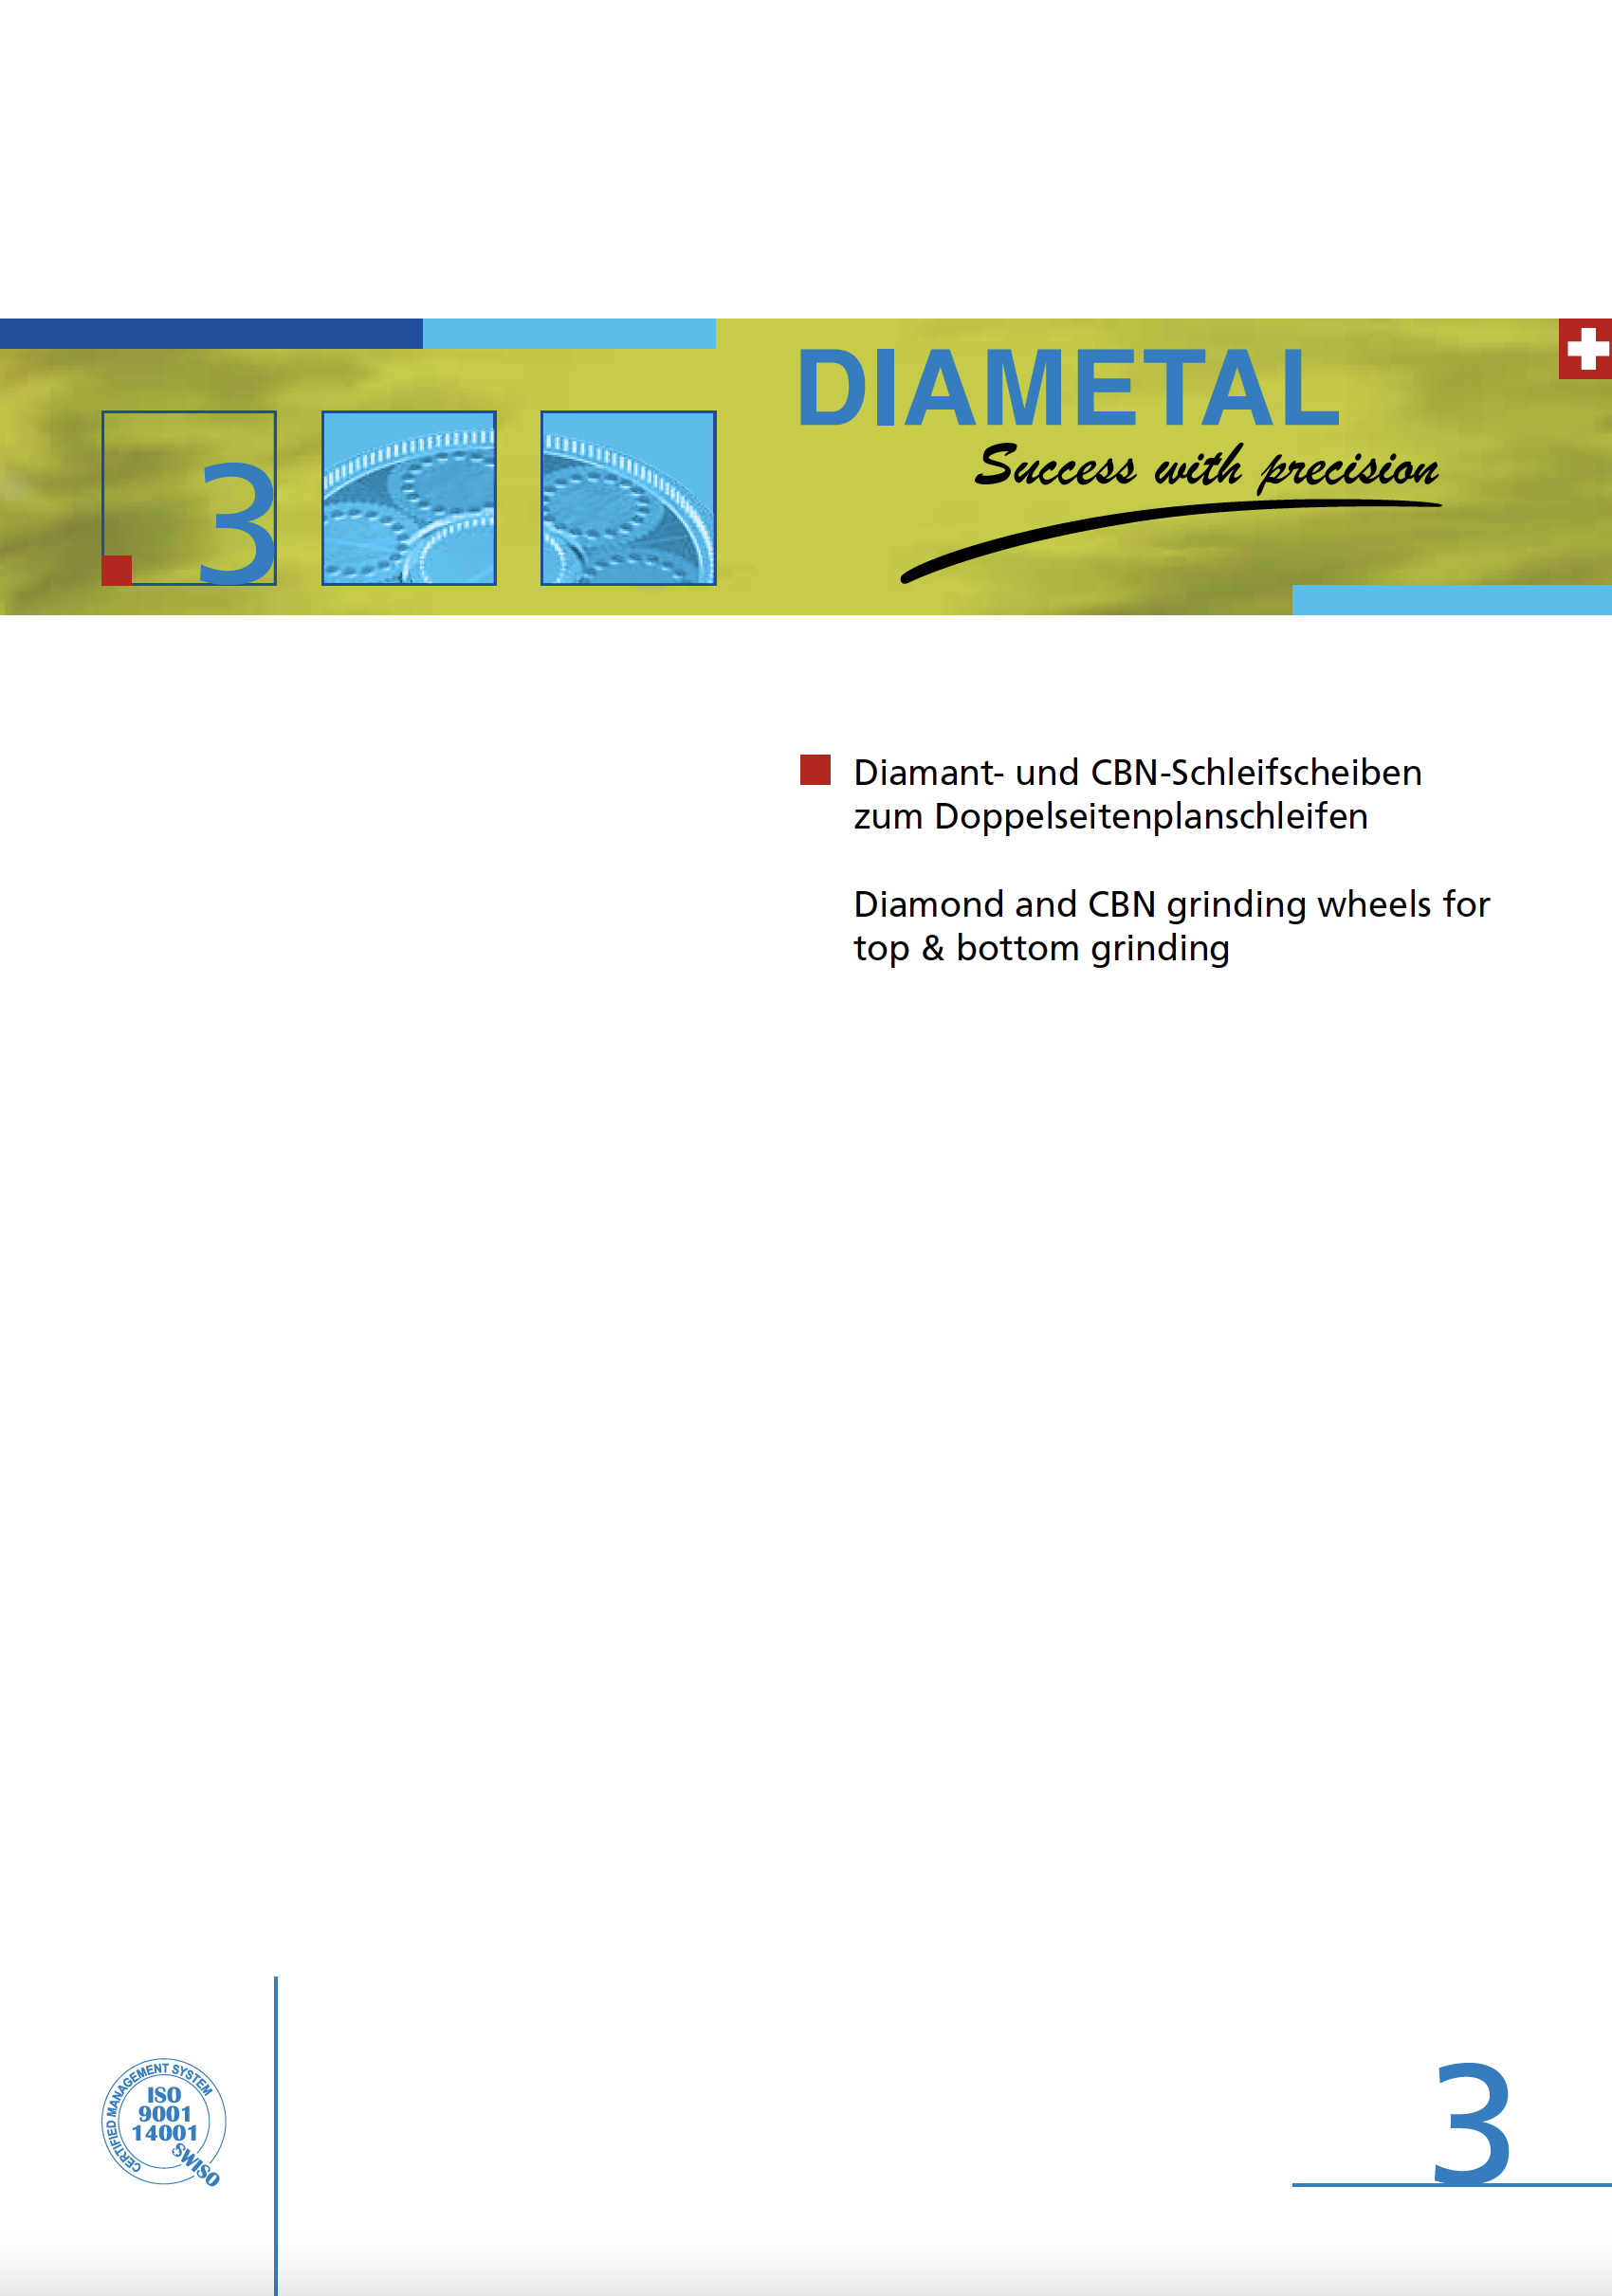 diamant-cbn-diametal